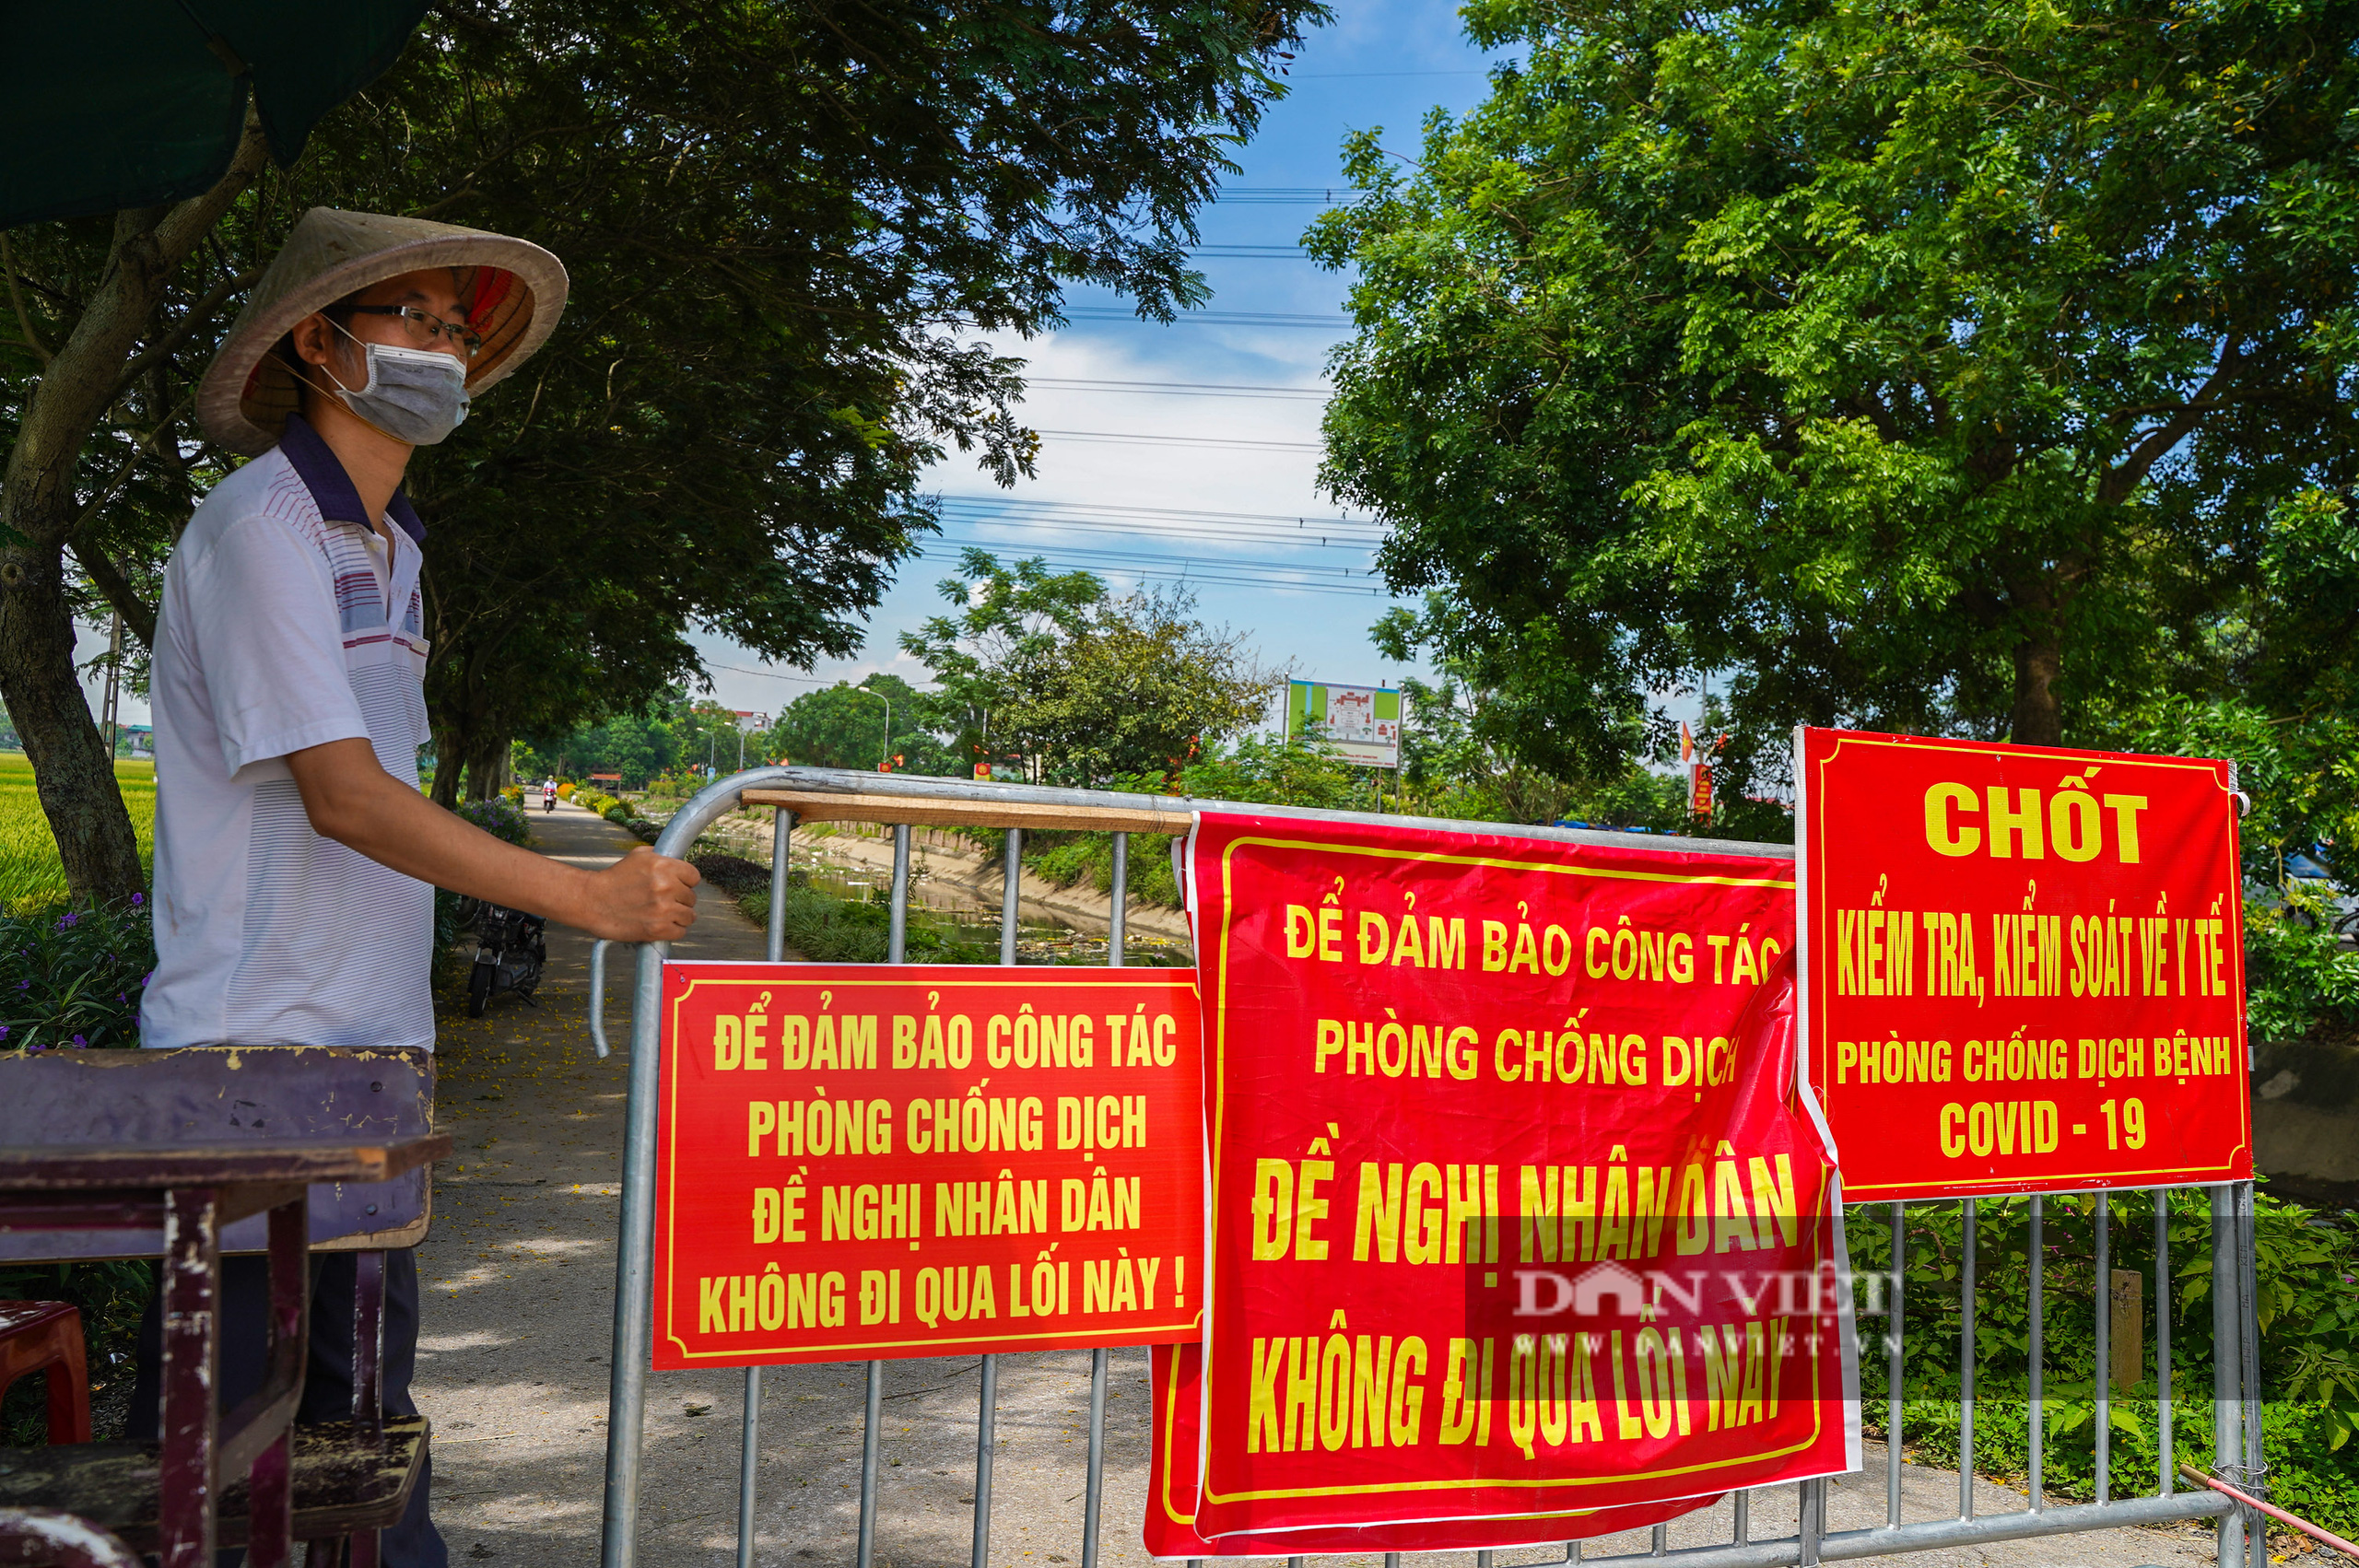 Hà Nội: Đổ đất, dựng rào phòng dịch tại các nơi tiếp giáp Bắc Giang, Bắc Ninh - Ảnh 7.